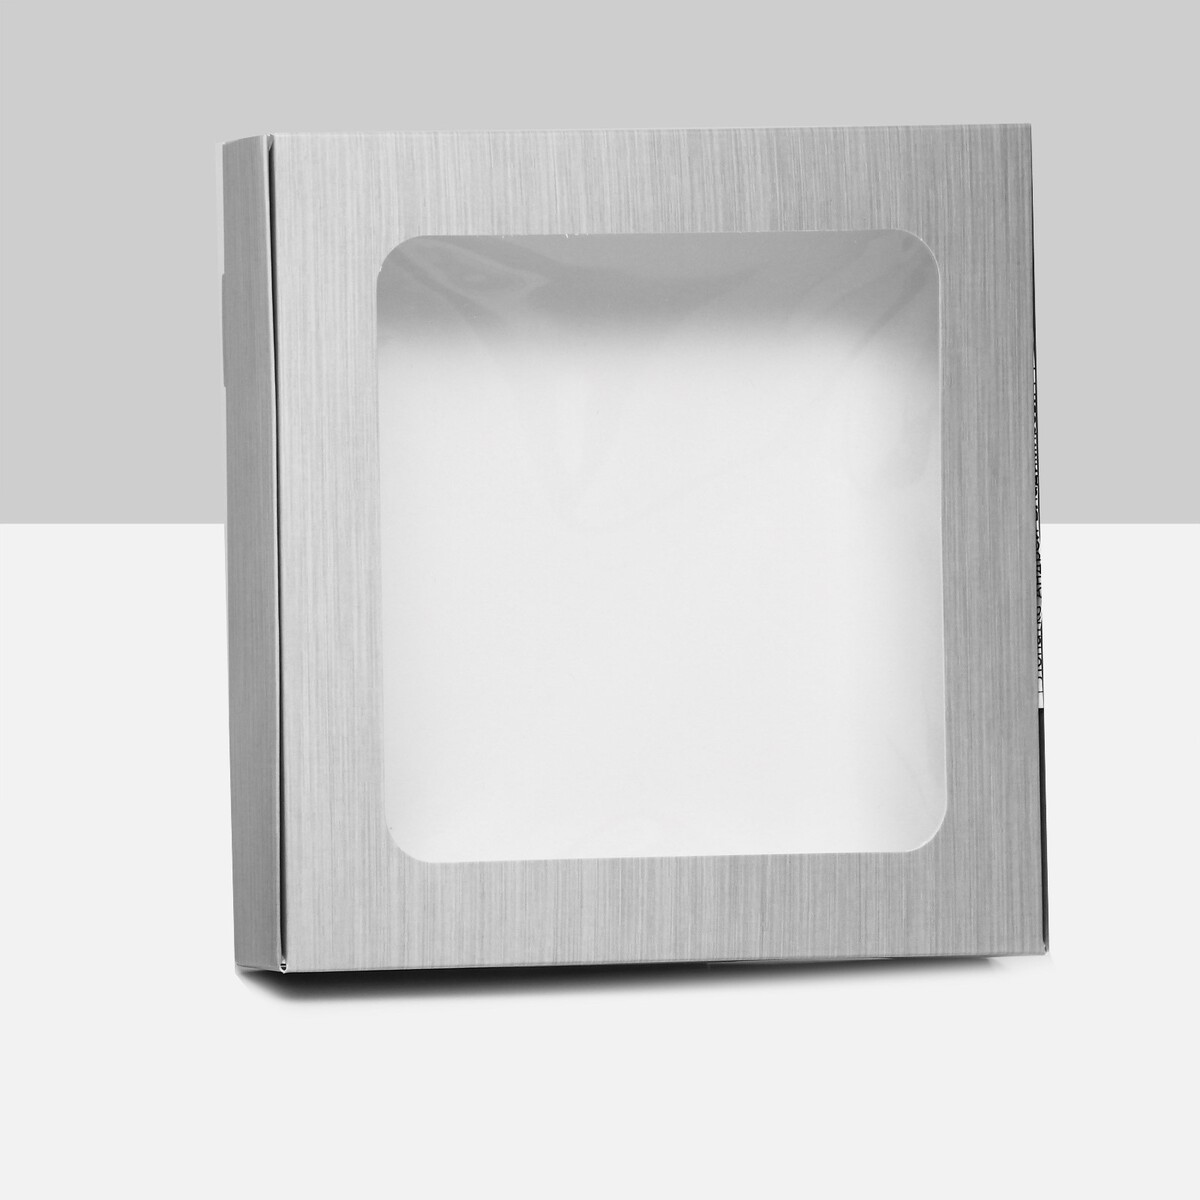 Коробка самосборная, с окном, серебрянная, 16 х 16 х 3 см коробка самосборная с окном мятная 16 х 16 х 3 см